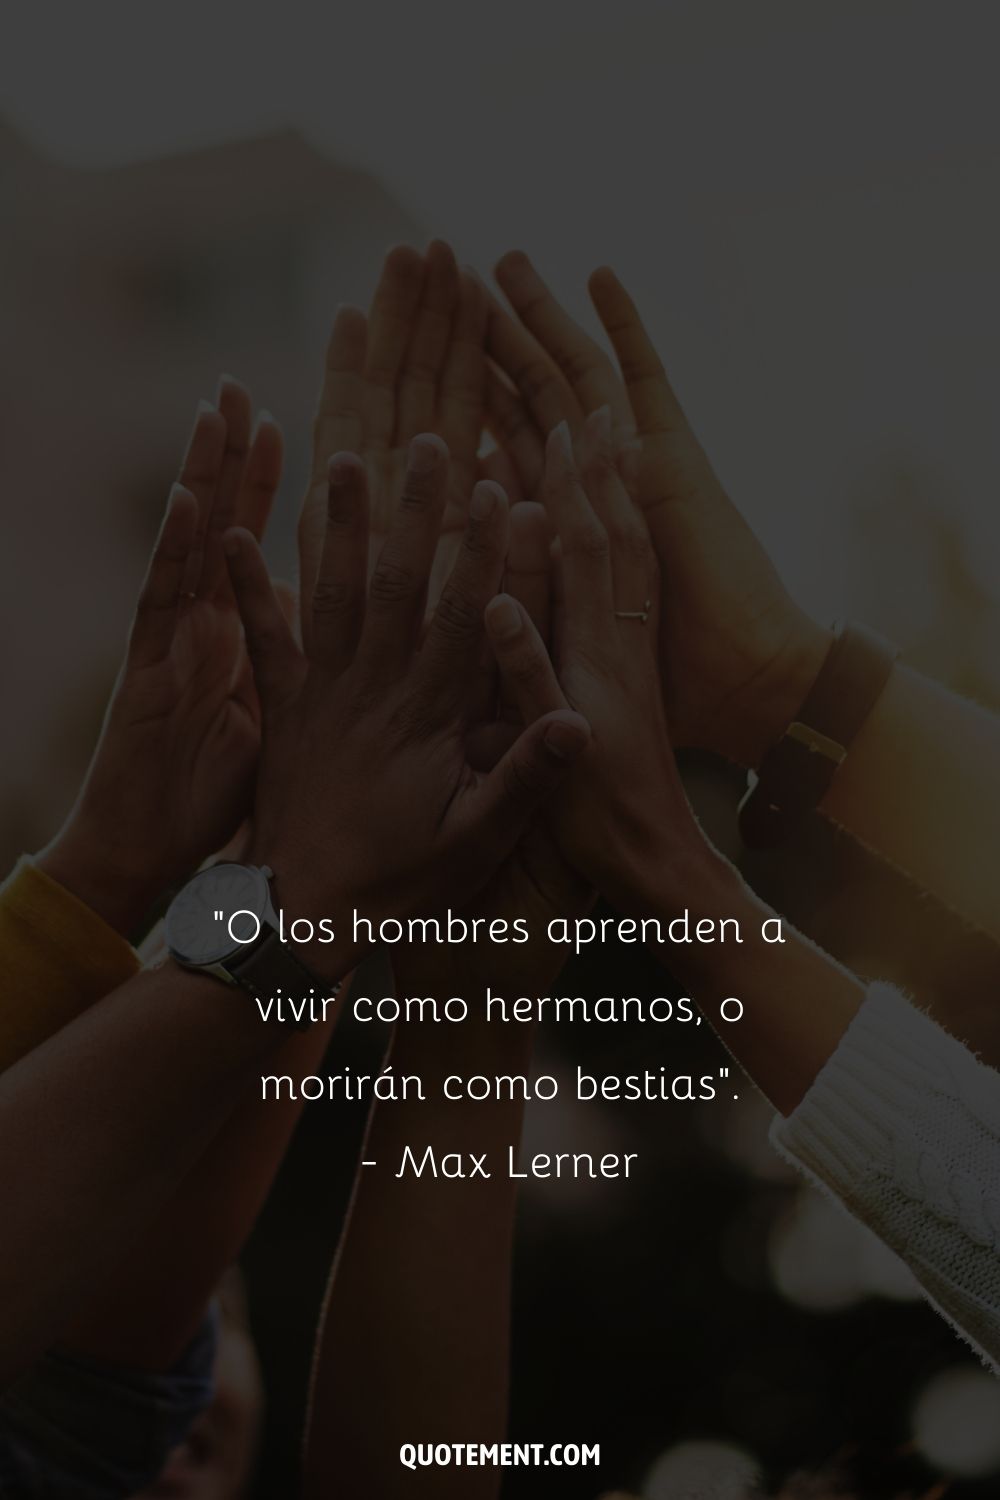 "O los hombres aprenden a vivir como hermanos, o morirán como bestias". - Max Lerner